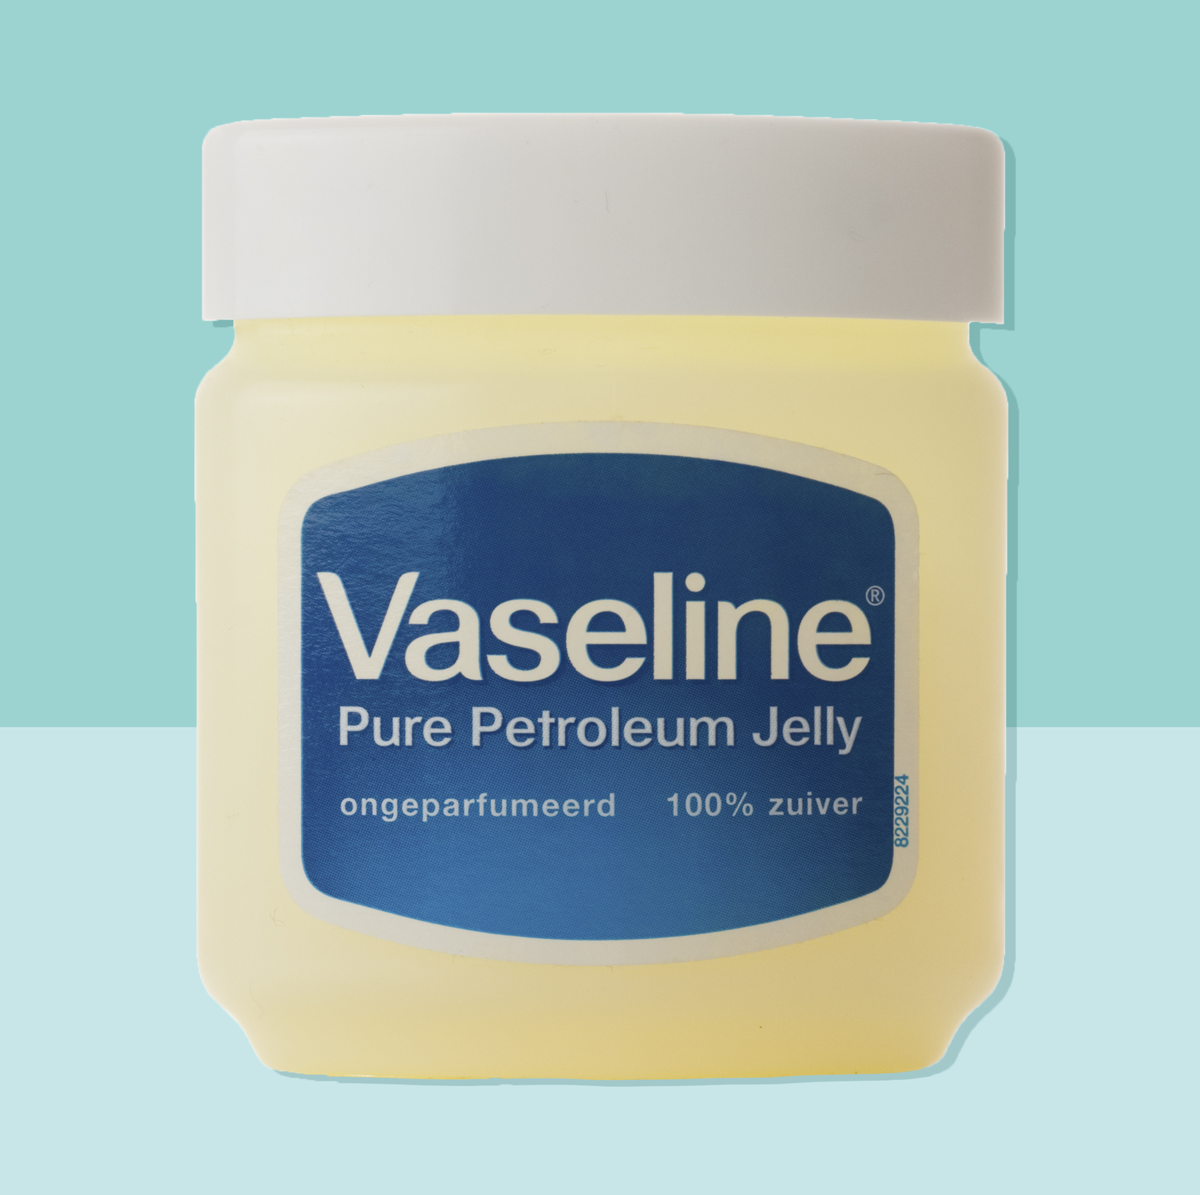 Vaseline Pure - 100ml